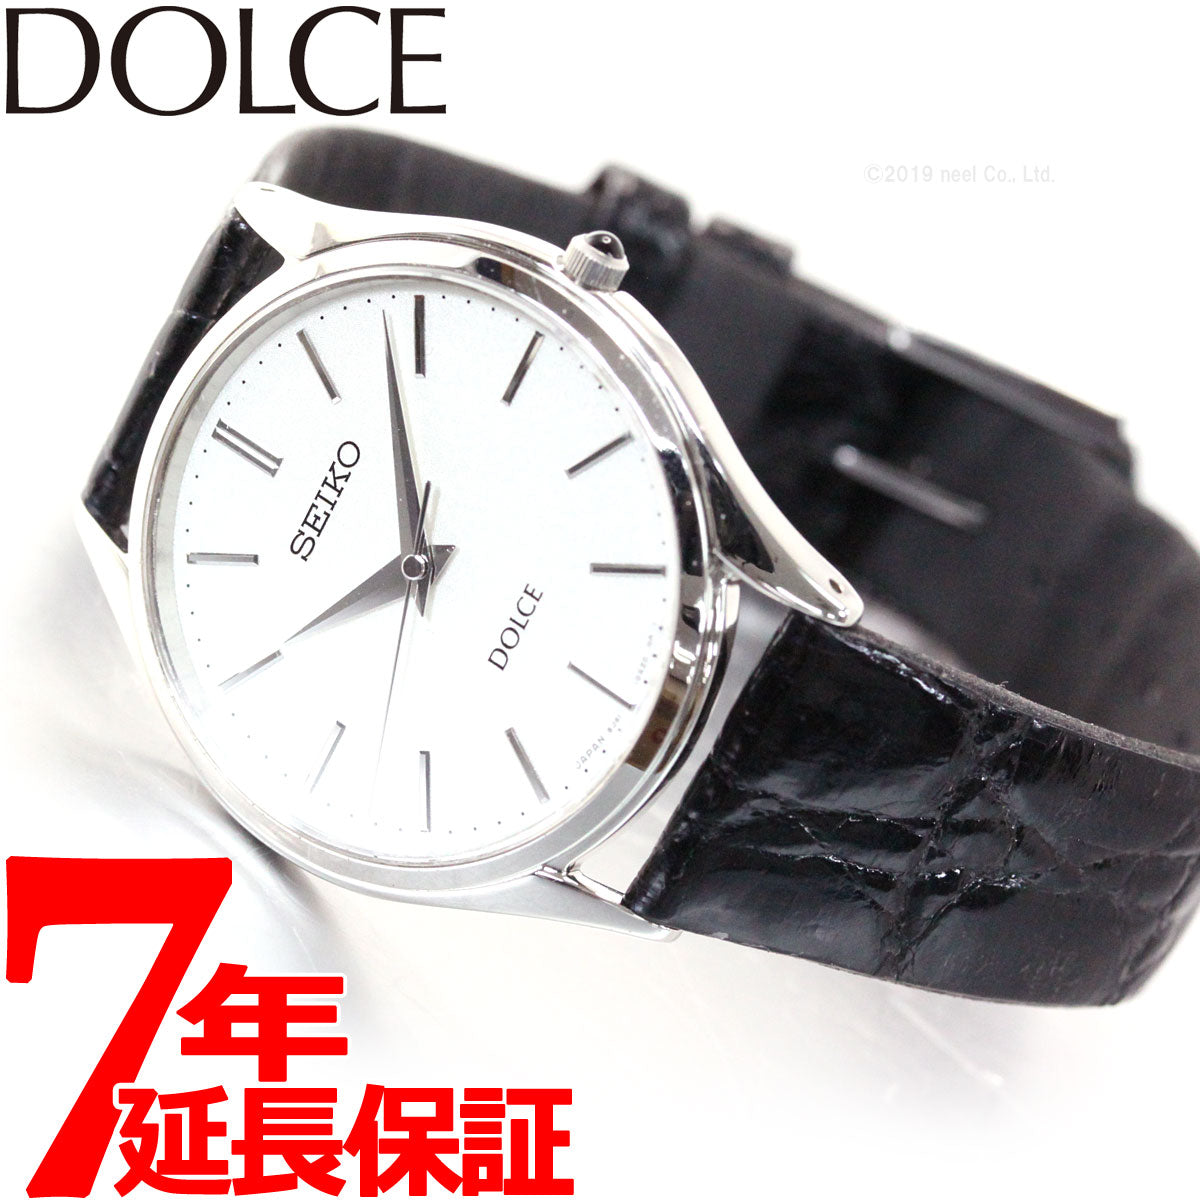 セイコー ドルチェ SEIKO DOLCE 腕時計 メンズ ペアウォッチ SACM171【セイコー ドルチェ】【正規品】【送料無料】